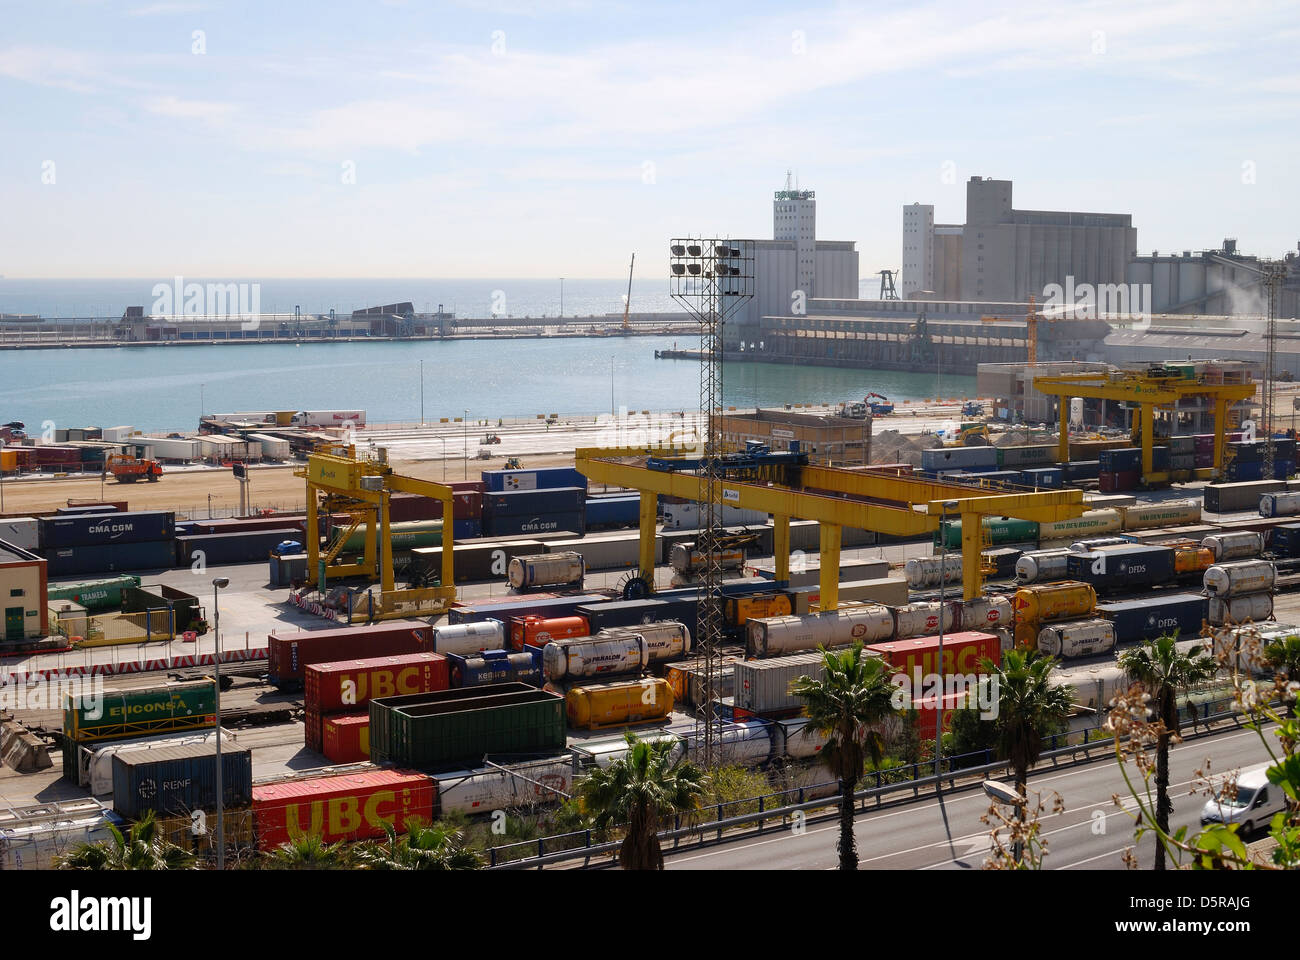 Port de Barcelone. La Catalogne. L'Espagne. Avec terminal de chemin de fer et les wagons et conteneurs à quai. Banque D'Images